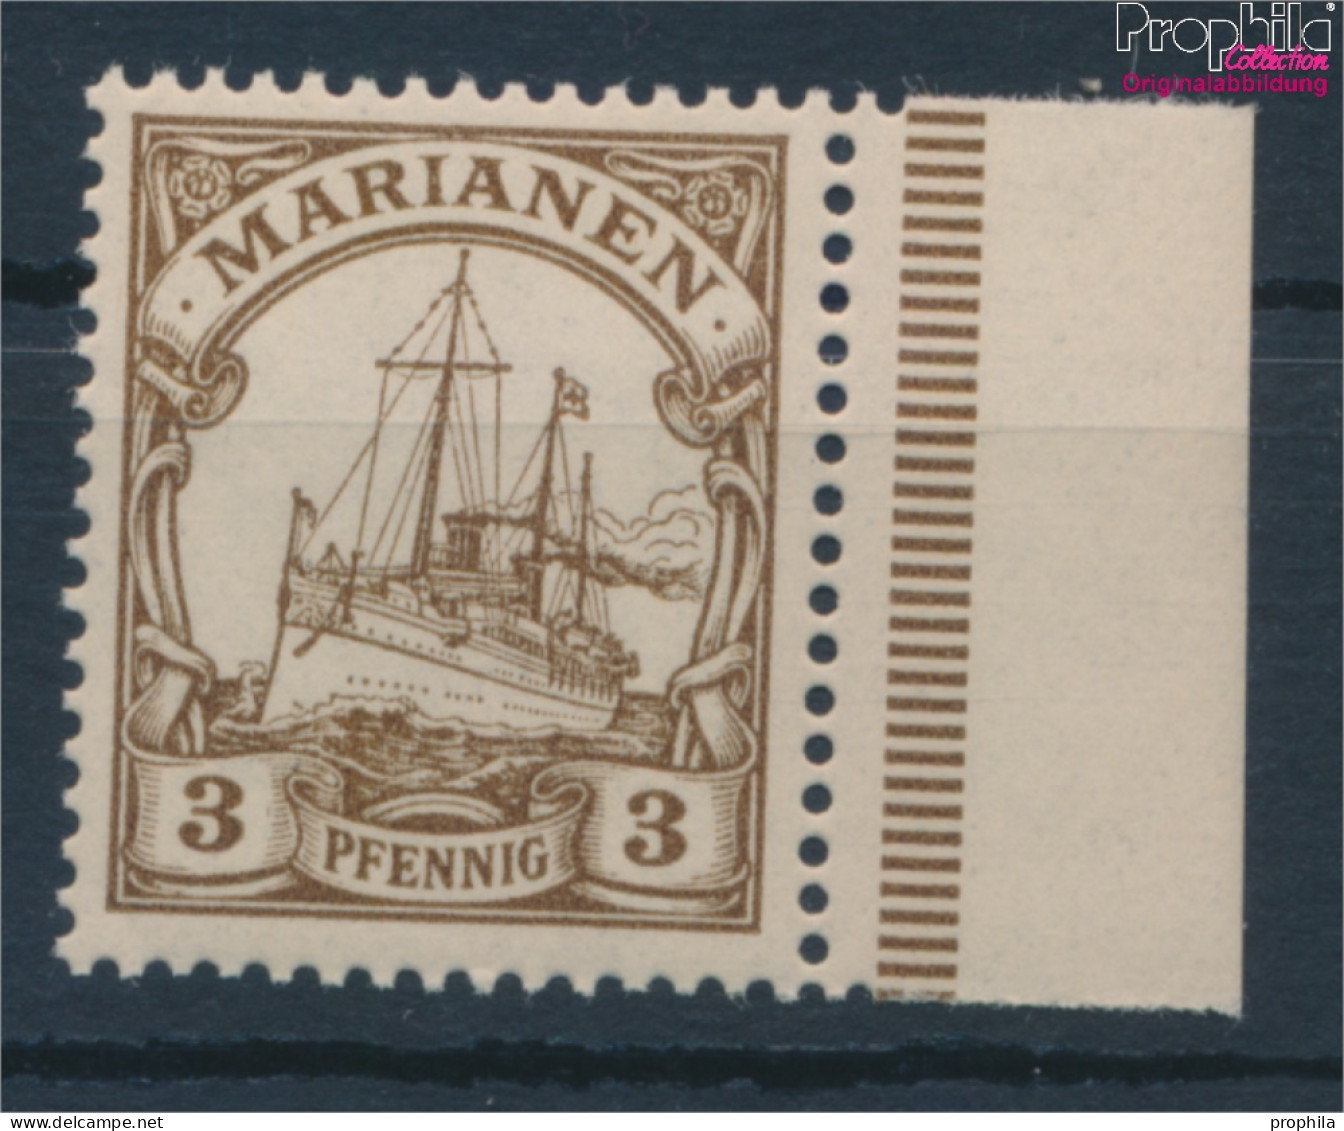 Marianen (Dt. Kolonie) 7 Postfrisch 1901 Schiff Kaiseryacht Hohenzollern (10181726 - Marianen